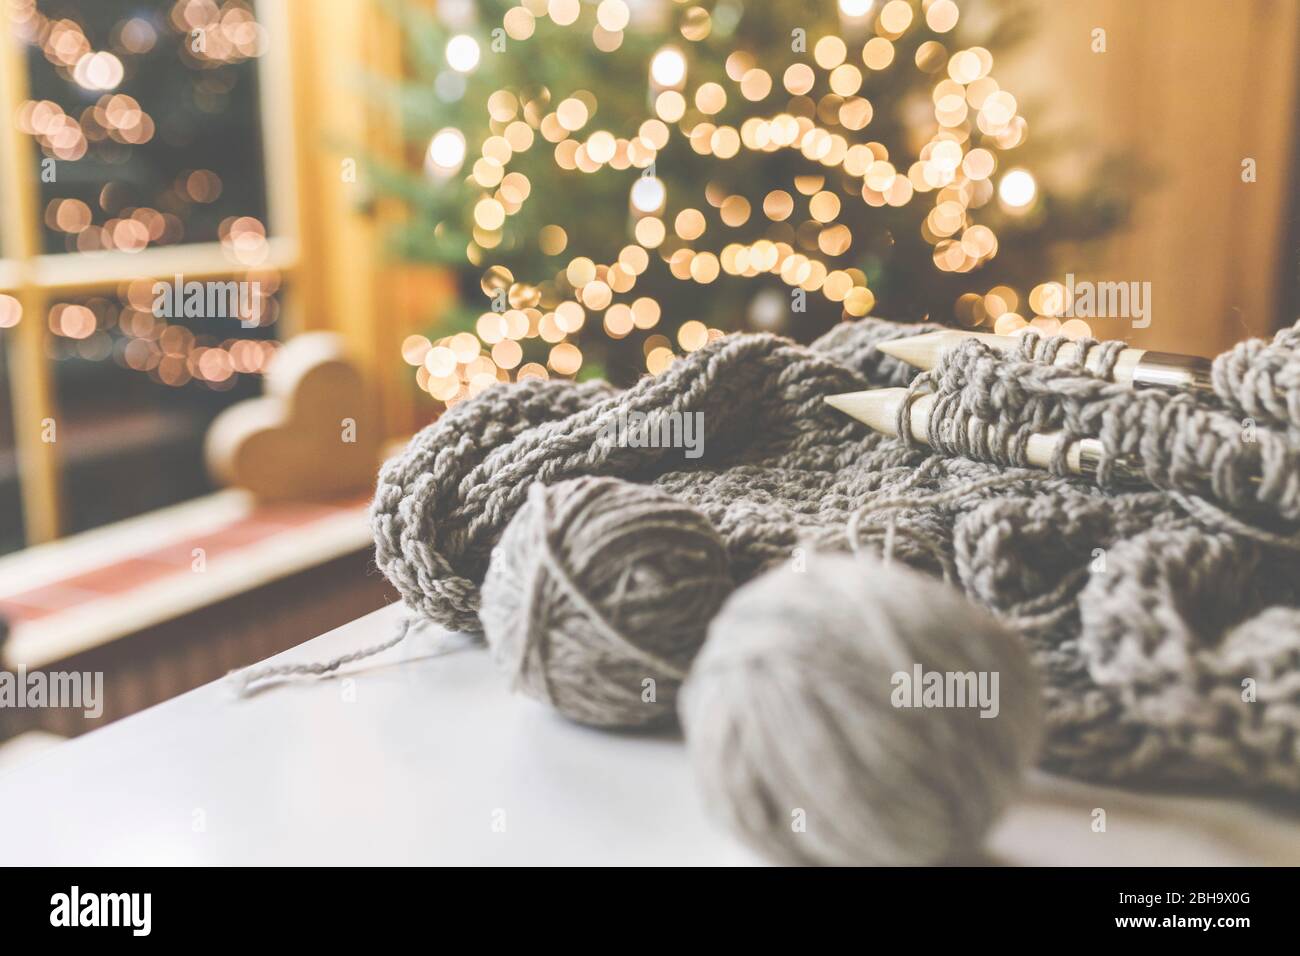 Gemütliches Weihnachten mit schöner Beleuchtung und dem Strickzeug mit großen Nadeln und schöner Wolle. Stock Photo